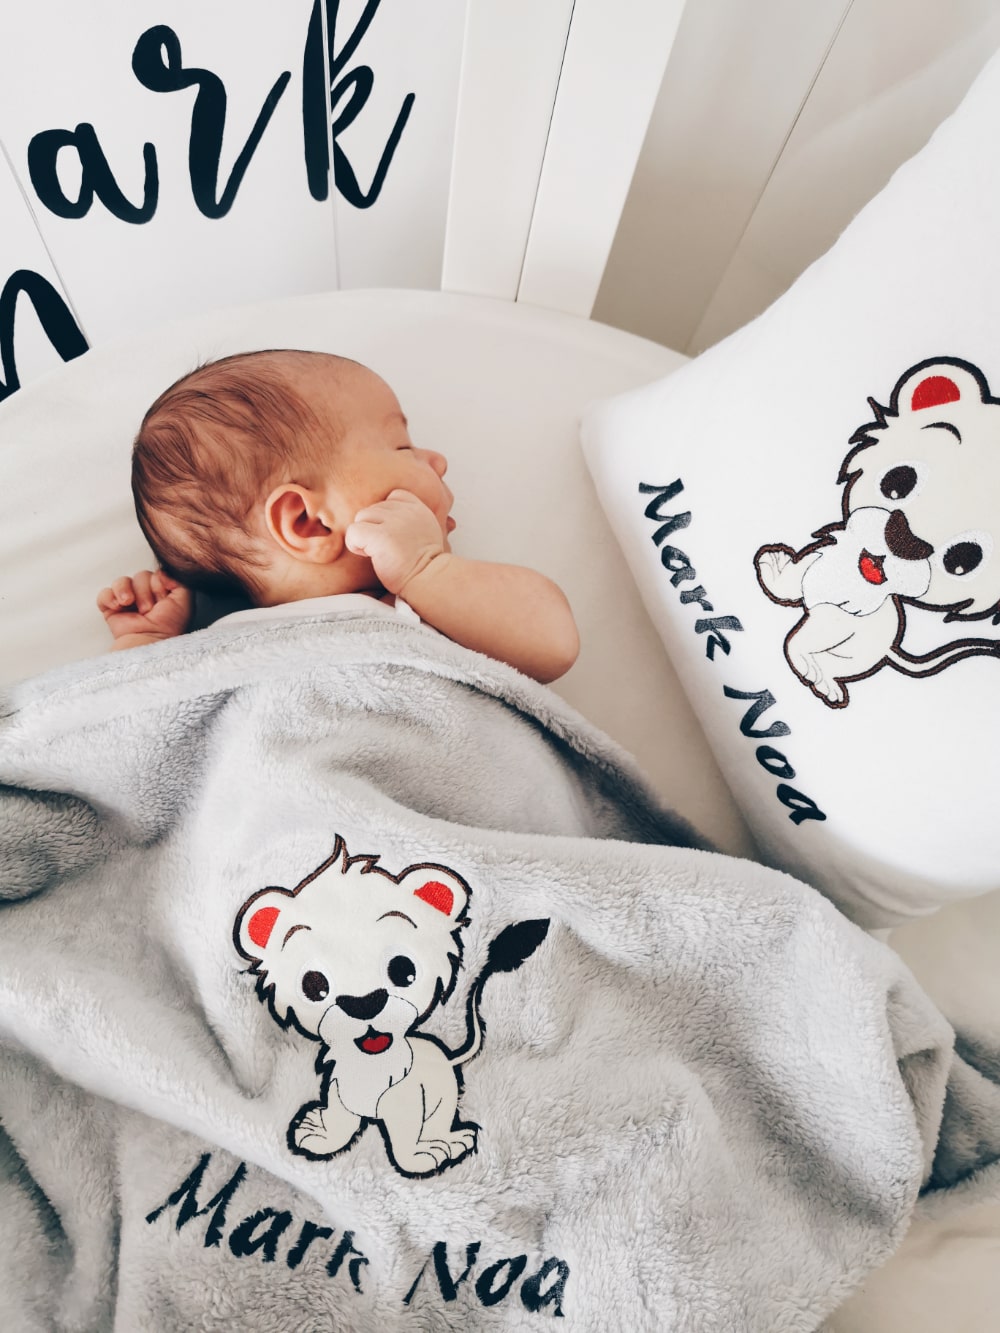 Schattige babyjongen rust vredig op zijn bed, knus met een zachte en gezellige gepersonaliseerde kussen en deken, aangepast met zijn naam en een charmant ontwerp.